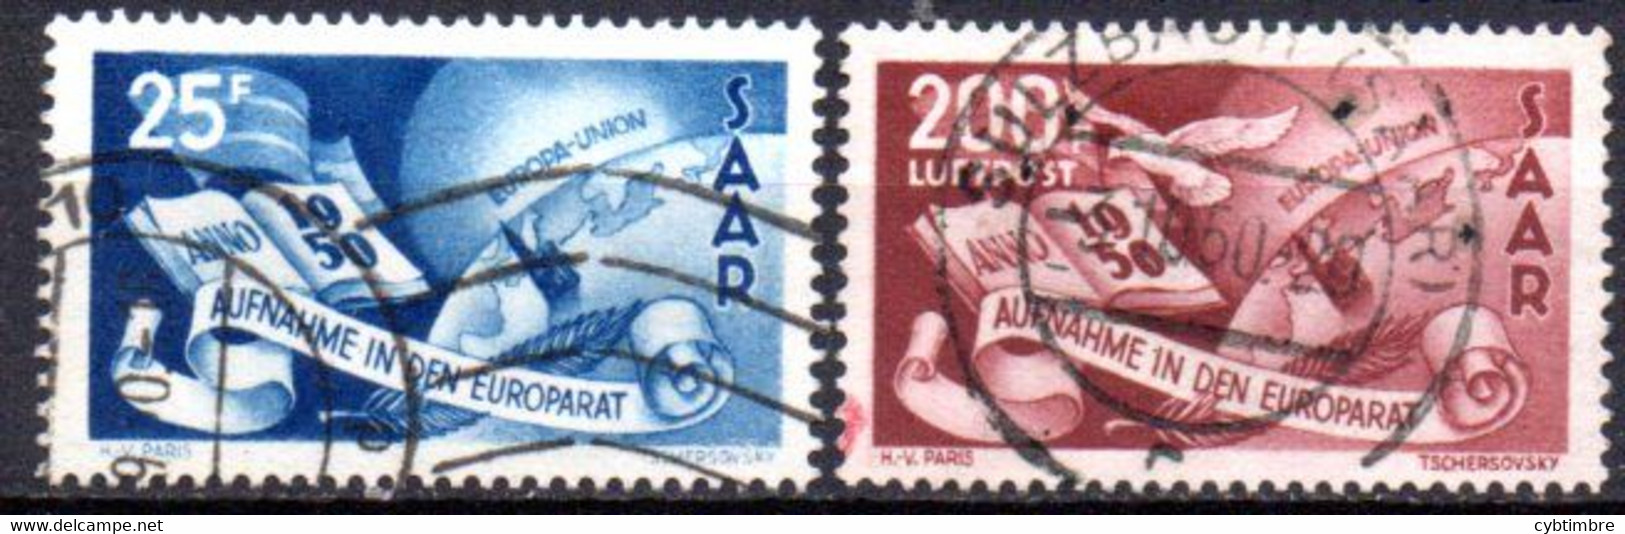 Sarre: Yvert N° 247 + A 13; UPU - Airmail